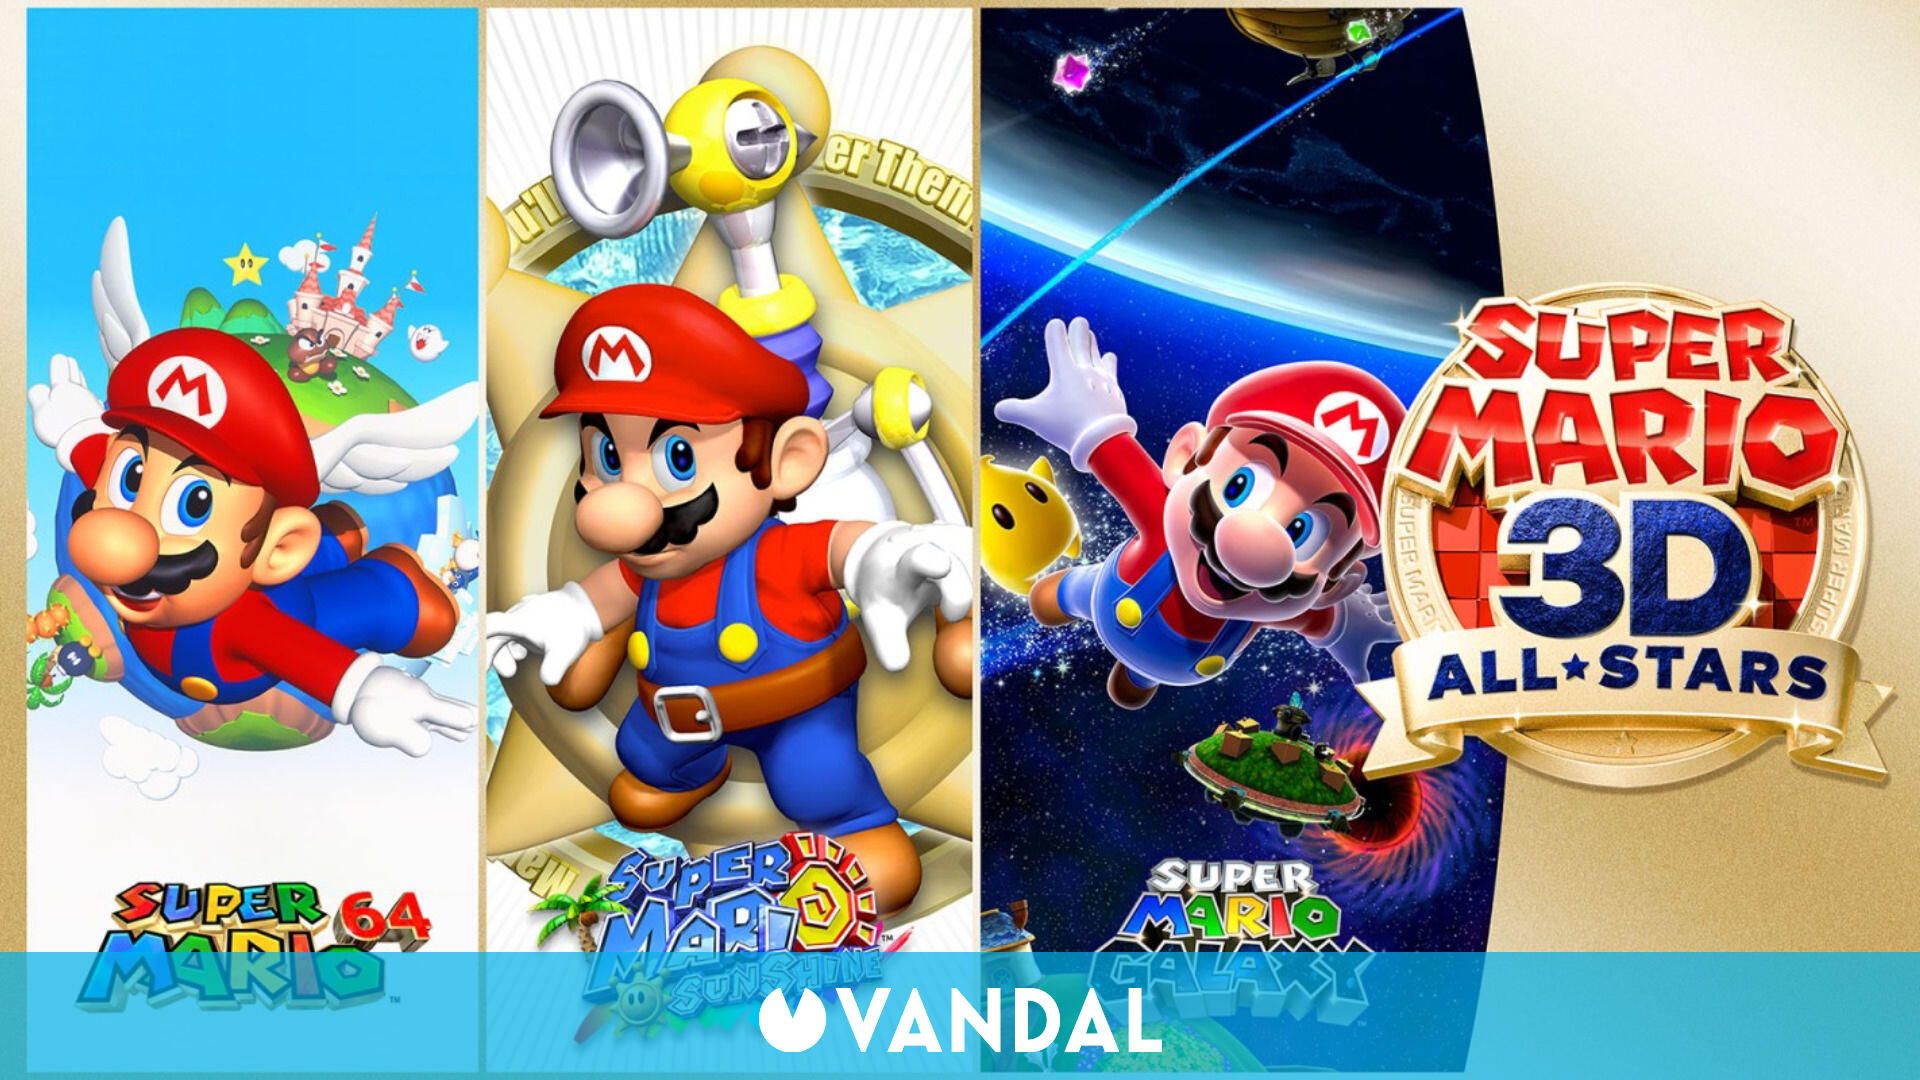 tienda mezcla ladrón Super Mario 64 de 3D All-Stars ya se puede jugar con el mando de Nintendo 64  - Vandal